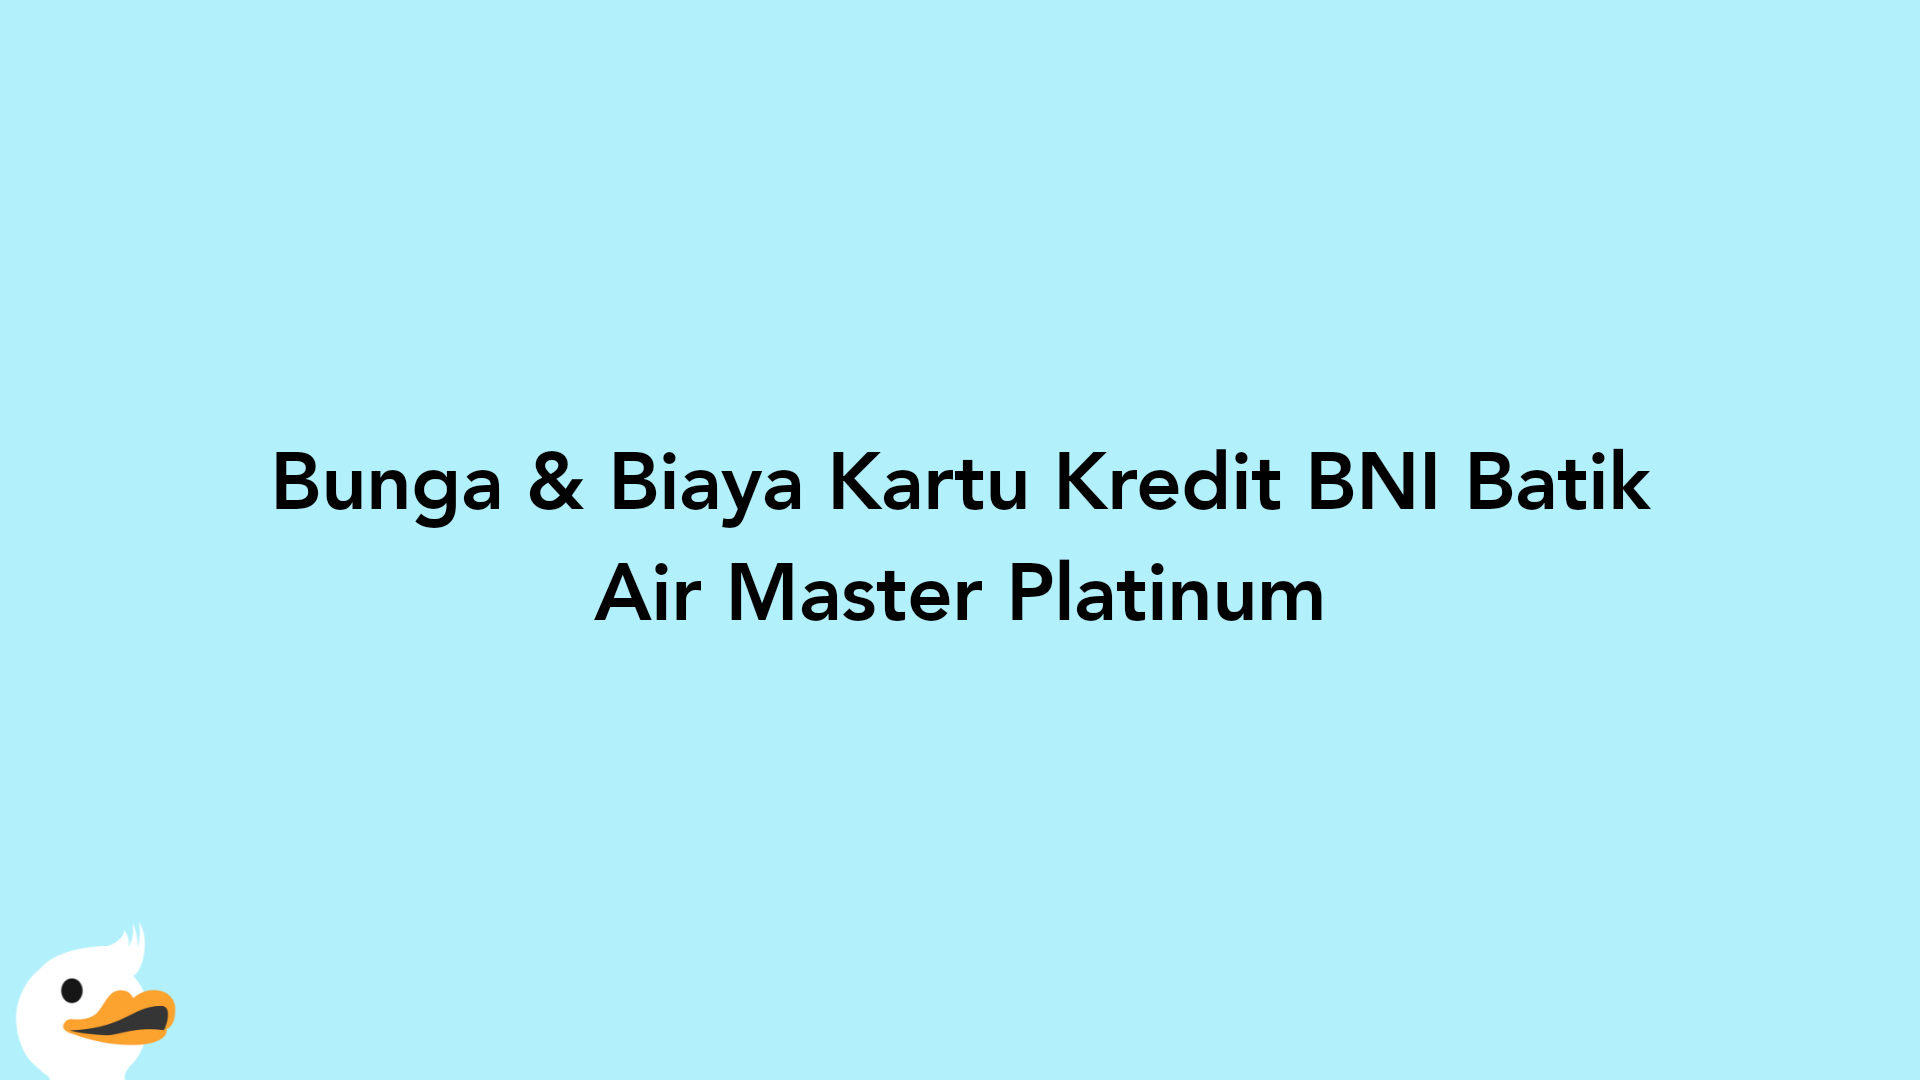 Bunga & Biaya Kartu Kredit BNI Batik Air Master Platinum